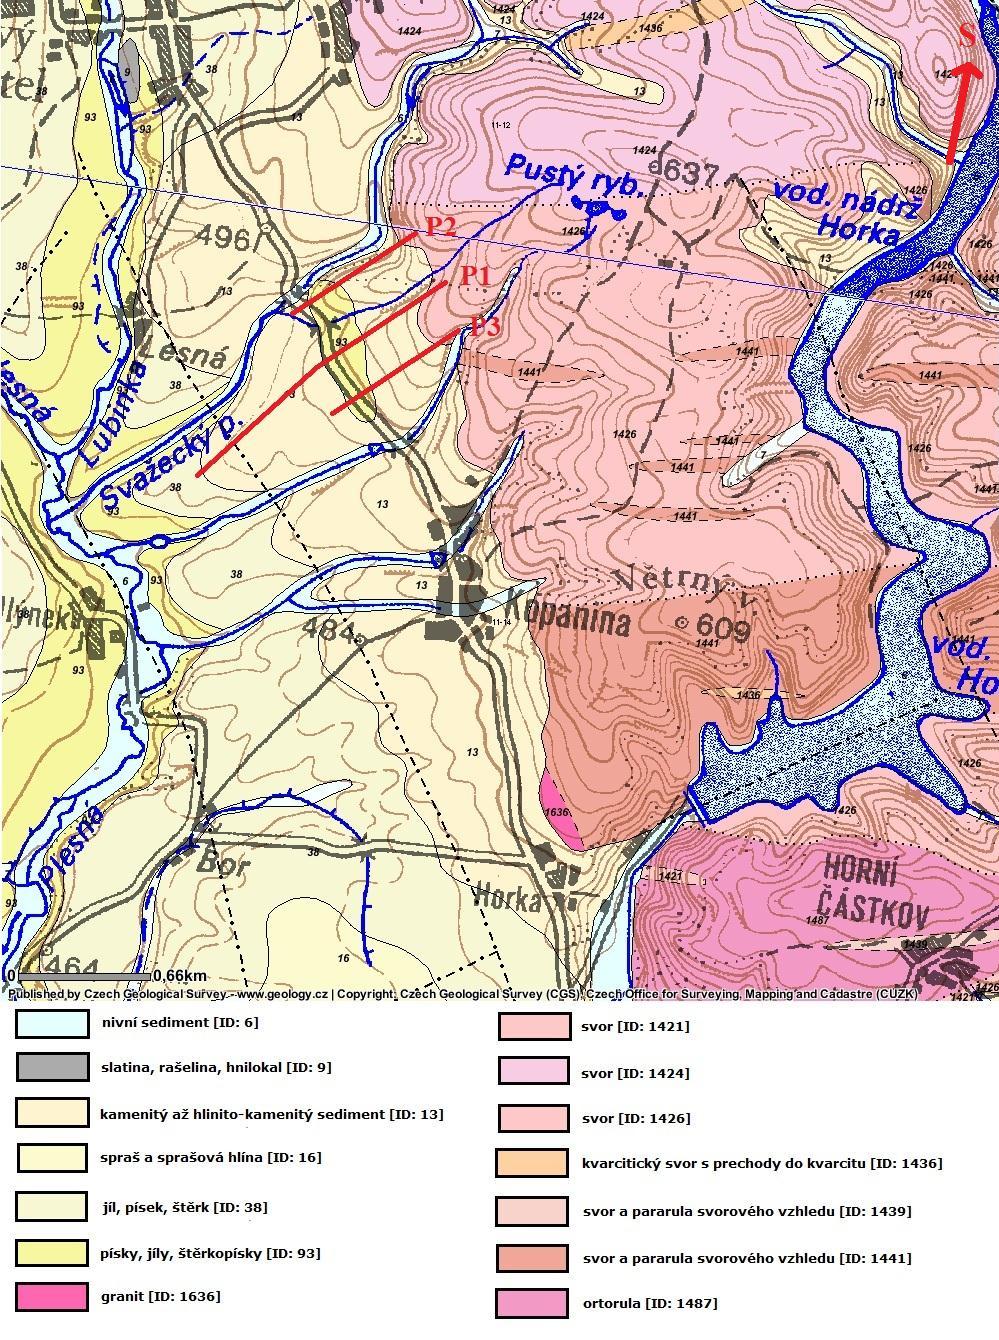 Obr. 7 Podrobná geologická mapa lokality s pozicí